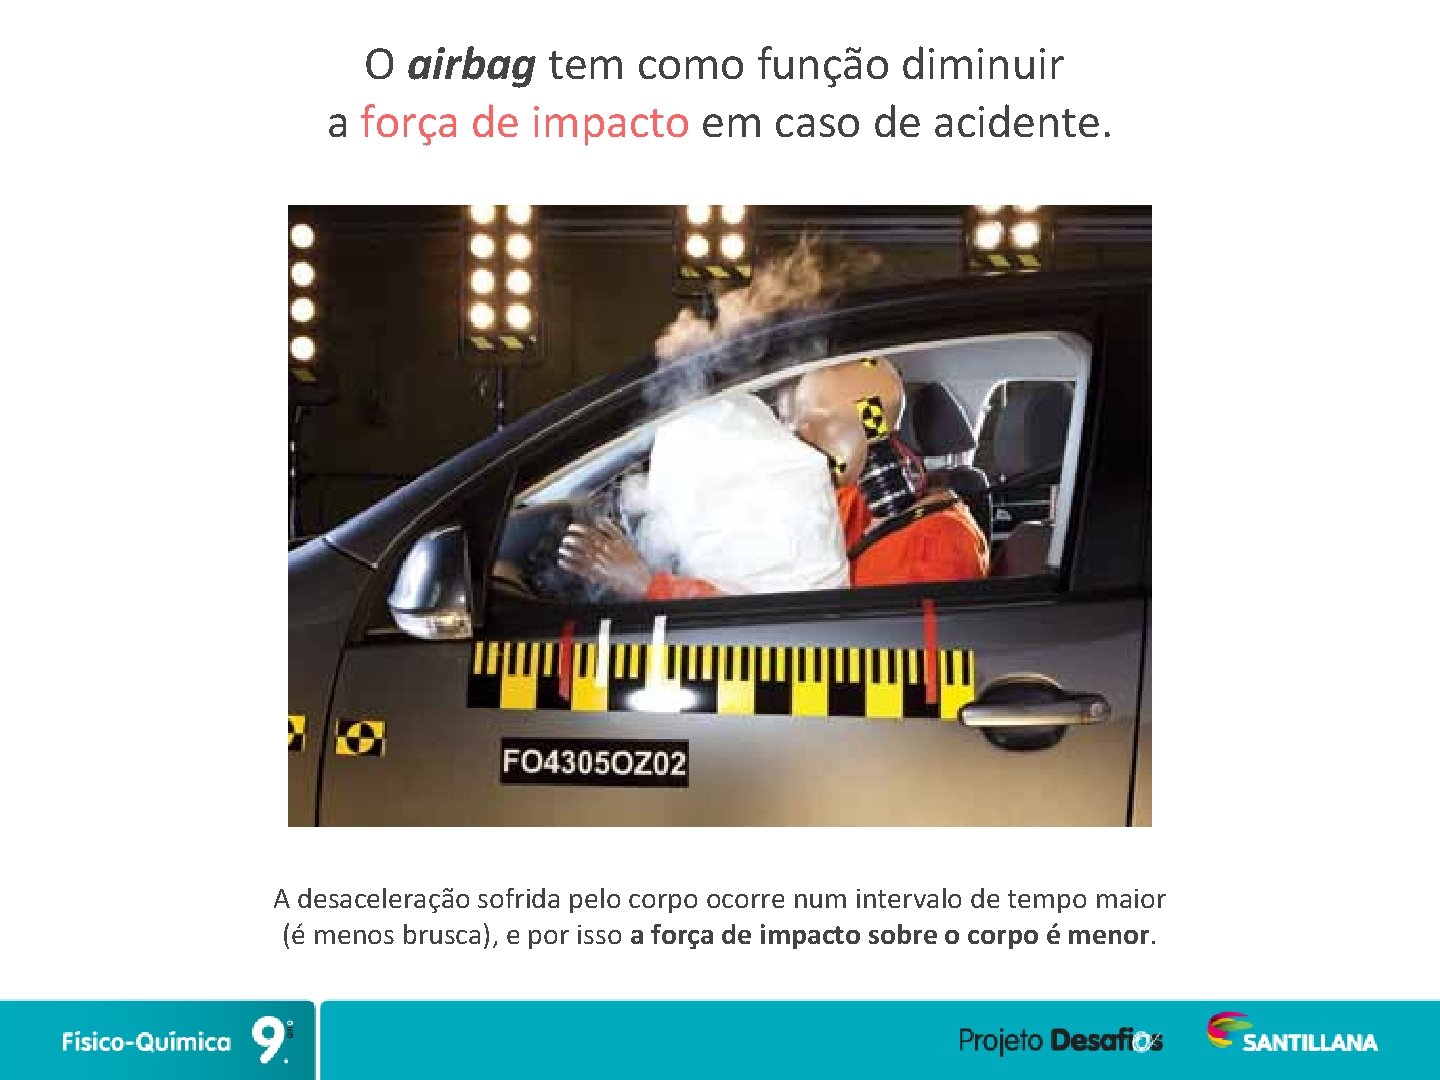 O airbag tem como função diminuir a força de impacto em caso de acidente.